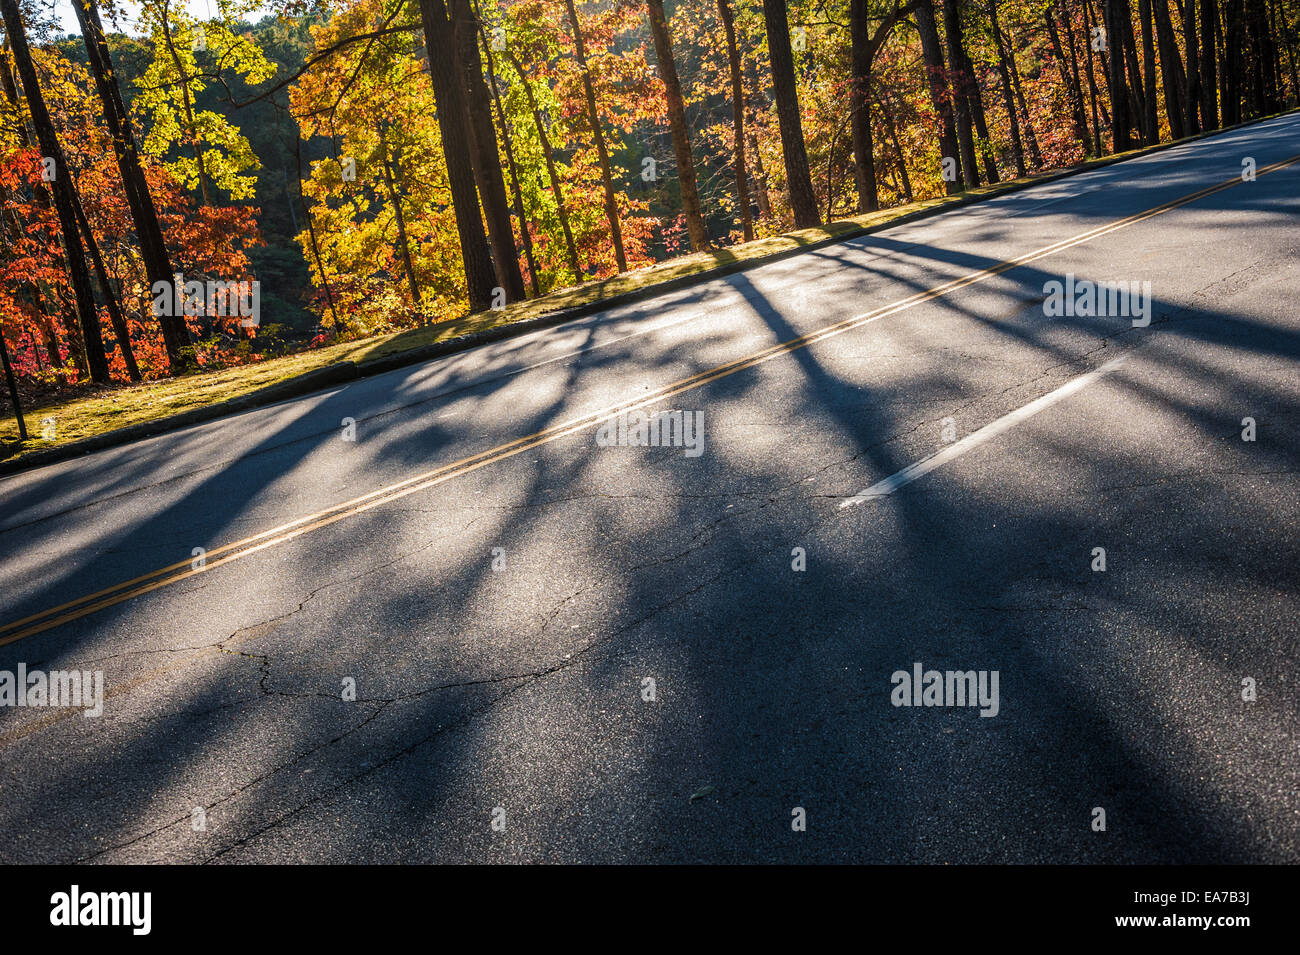 Les arbres ensoleillés avec des feuilles d'automne projettent de grandes ombres à travers une route à Atlanta's scenic Stone Mountain Park. USA. Banque D'Images